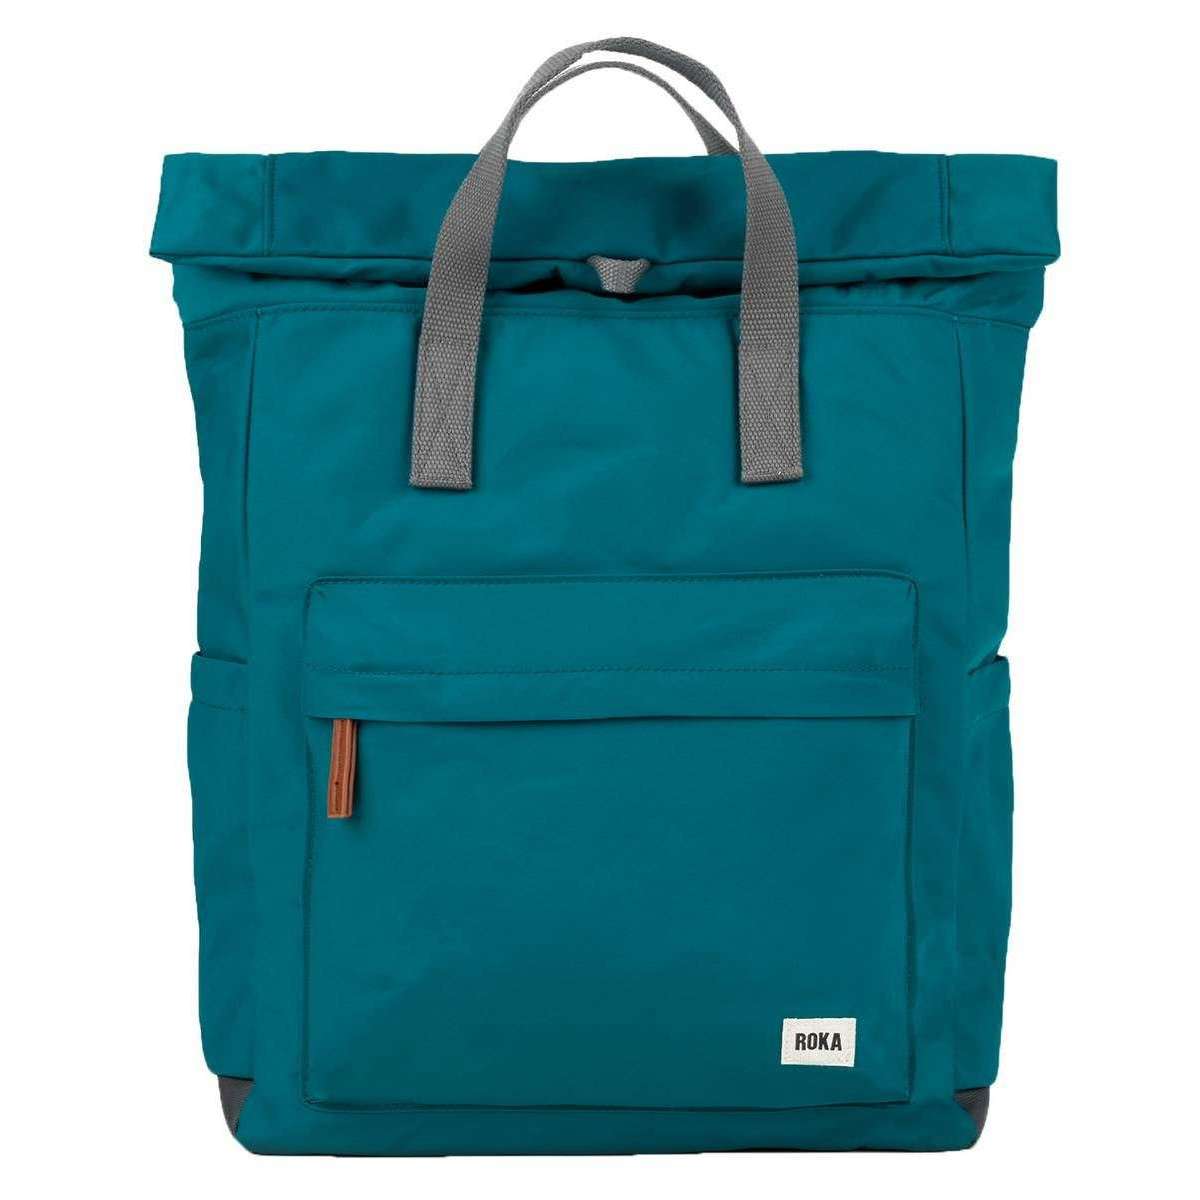 Roka Canfield B Large Sustainable Nylon Backpack - Marine Blue